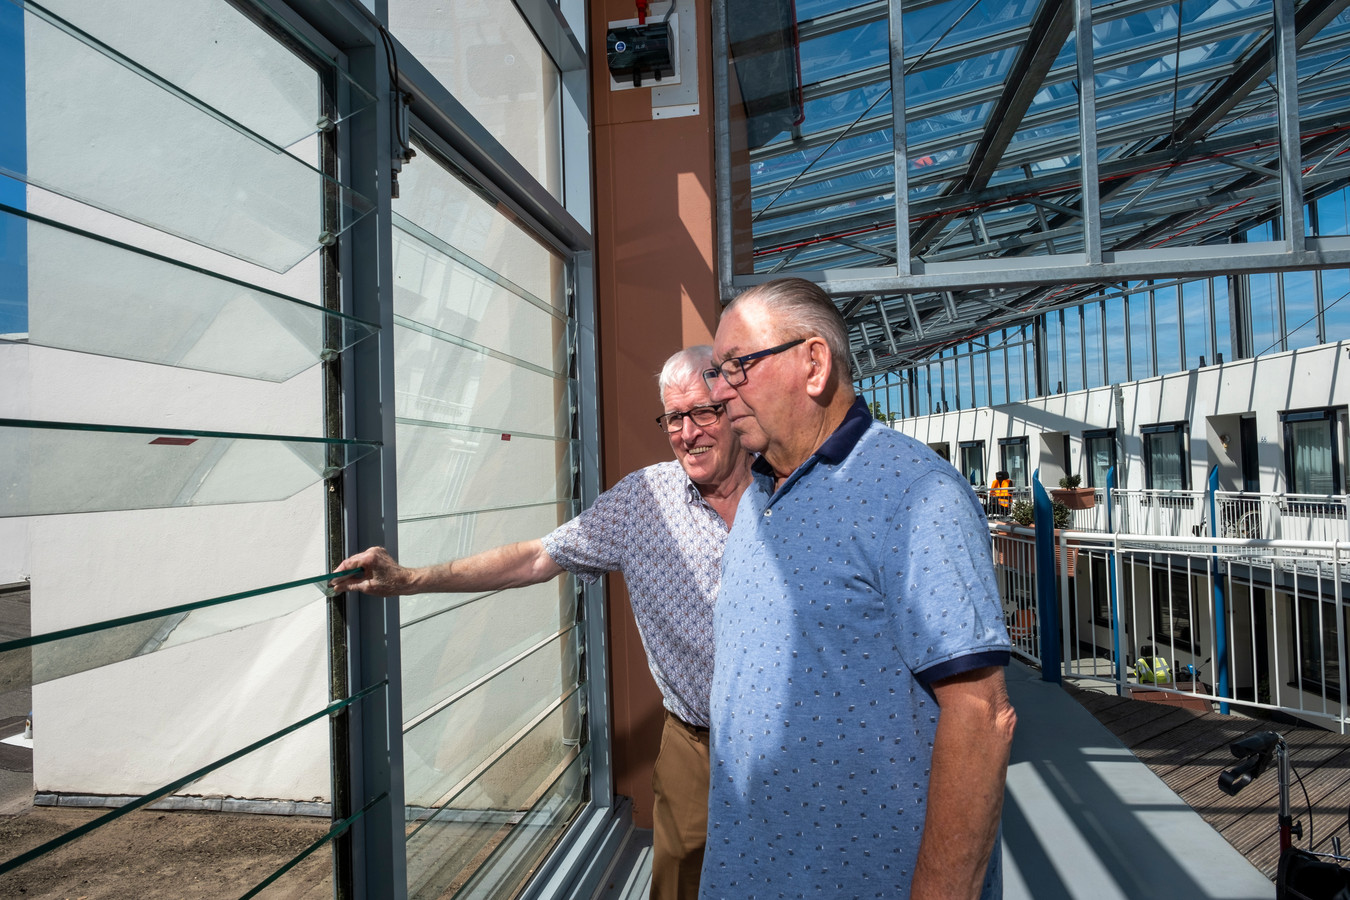 In de oude situatie zetten Jan van Keulen en Henk Schutte de glazen lamellen open als de bovenverdieping van het atrium in de Hof van Blom te warm wordt.